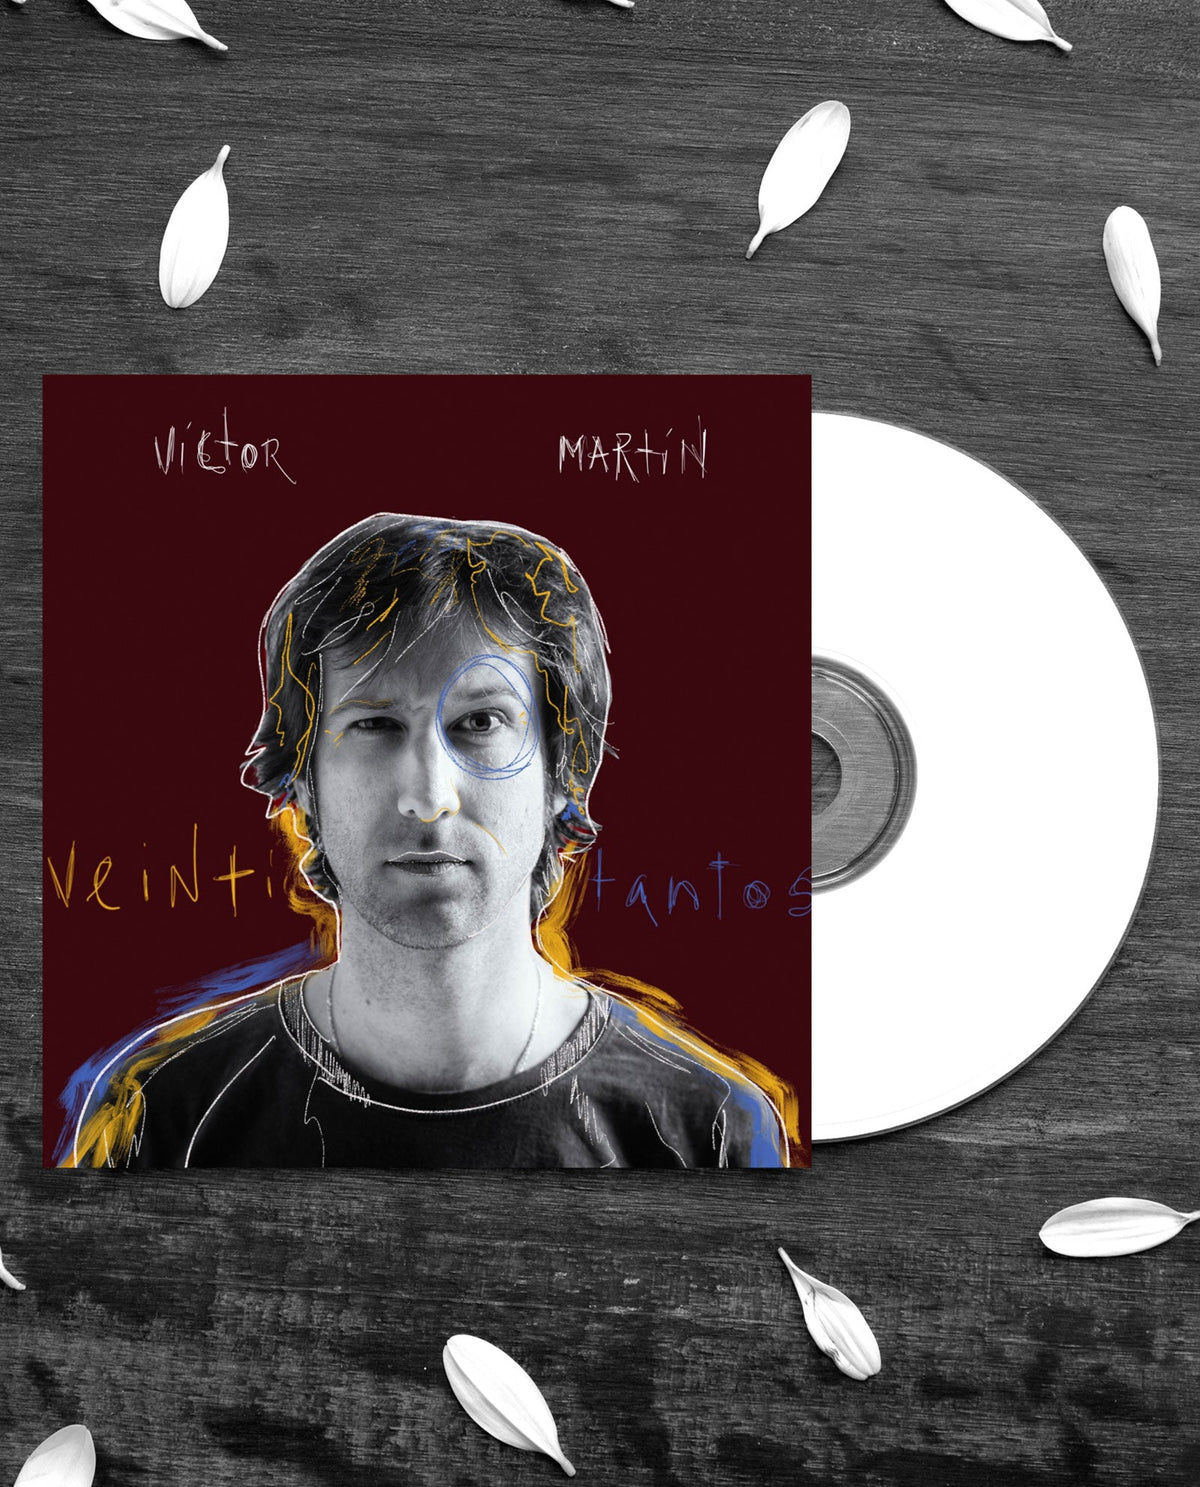 Víctor Martín - CD "Veintitantos" - D2fy · Rocktud - Metales Preciosos